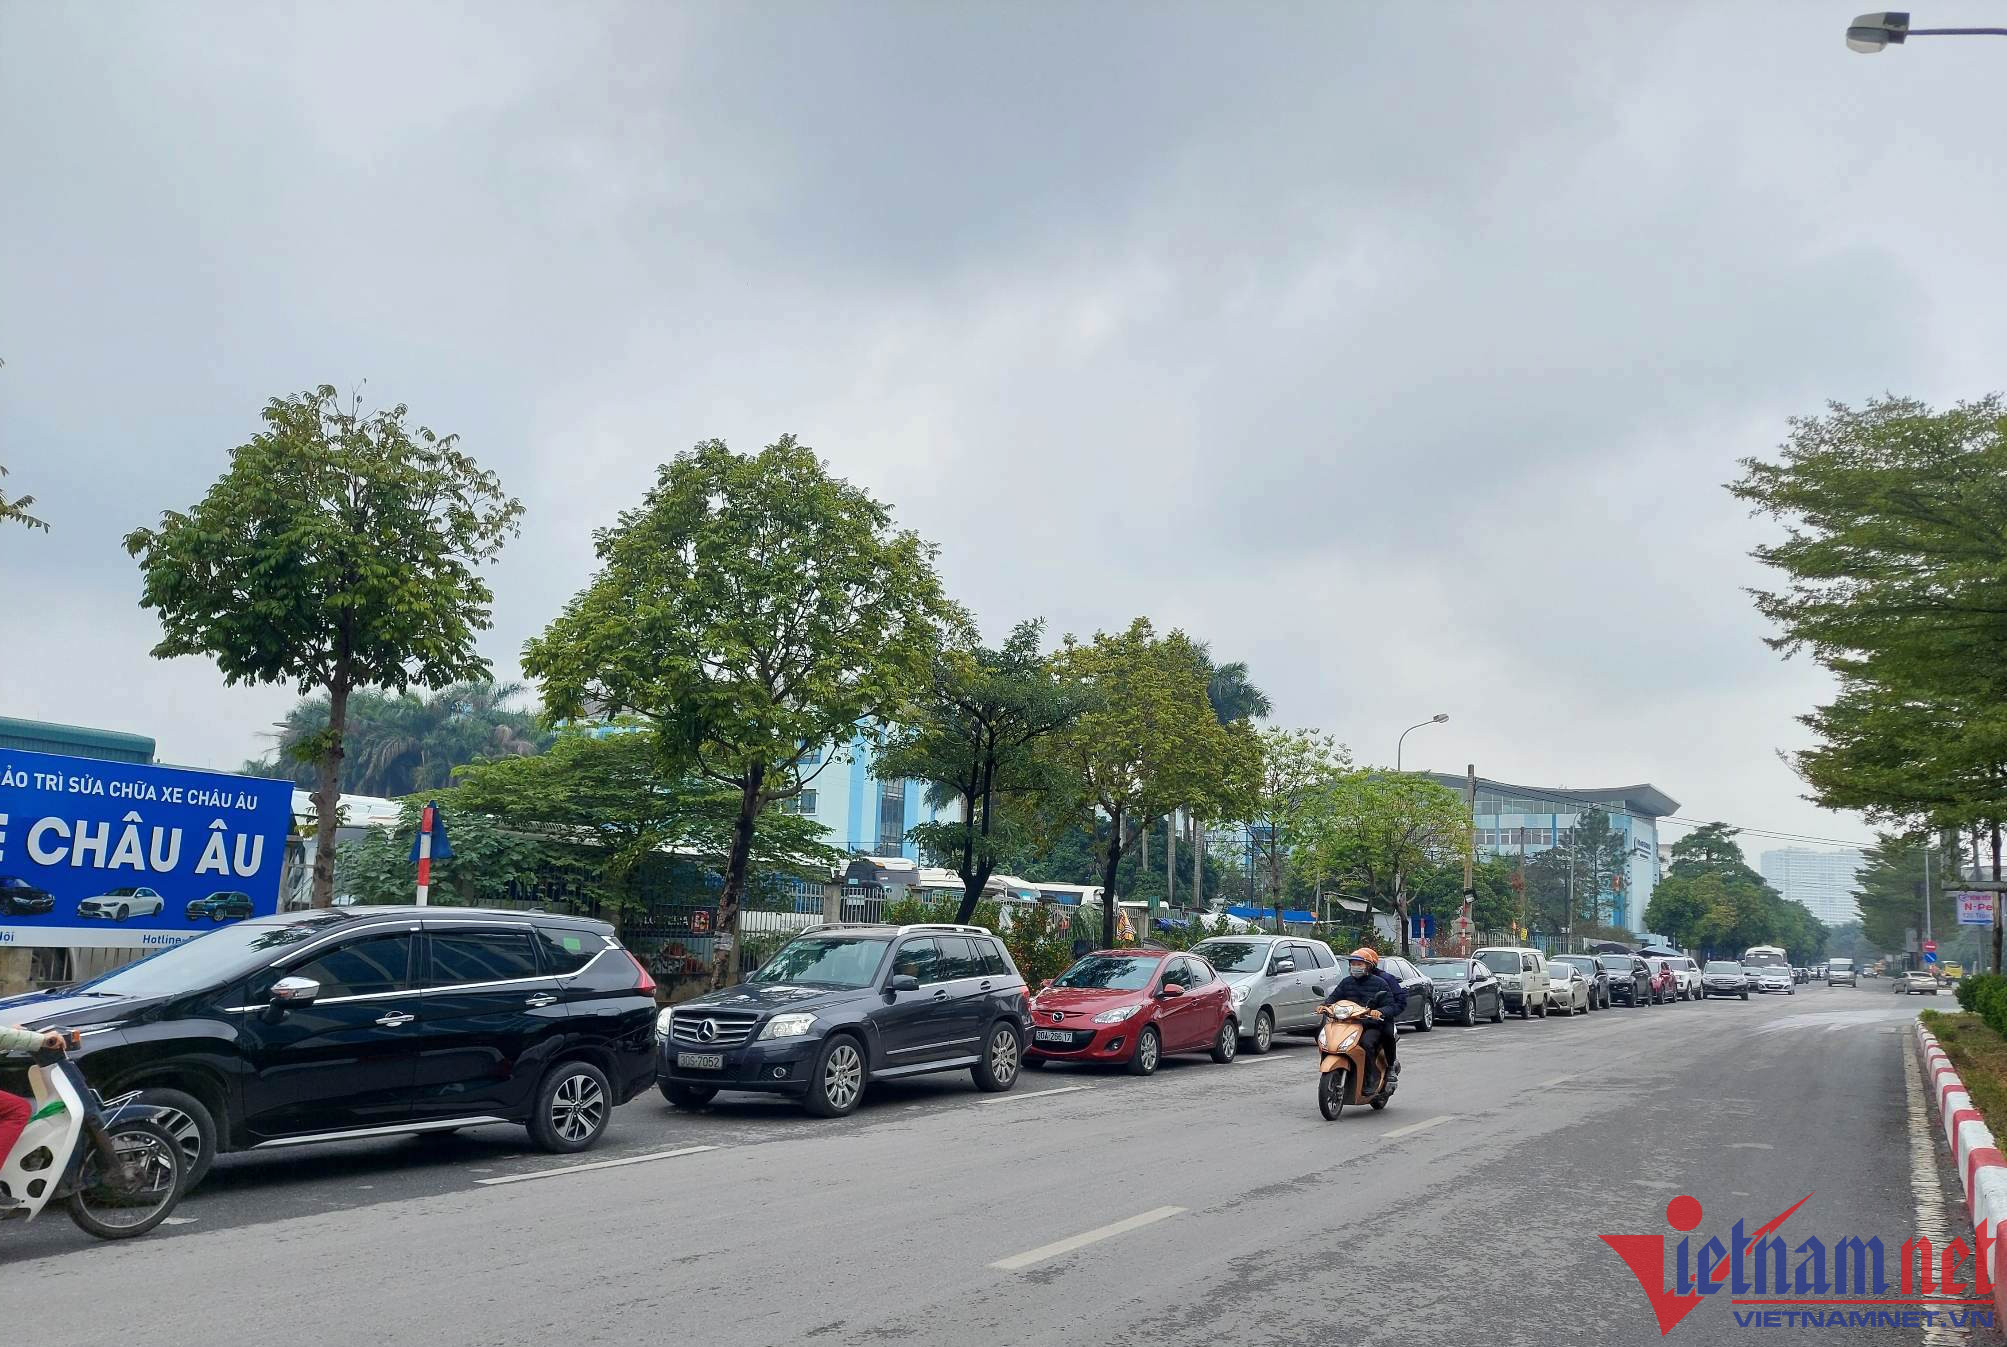 Các trung tâm đăng kiểm tại Hà Nội quá tải, chủ xe xin 'lối thoát'